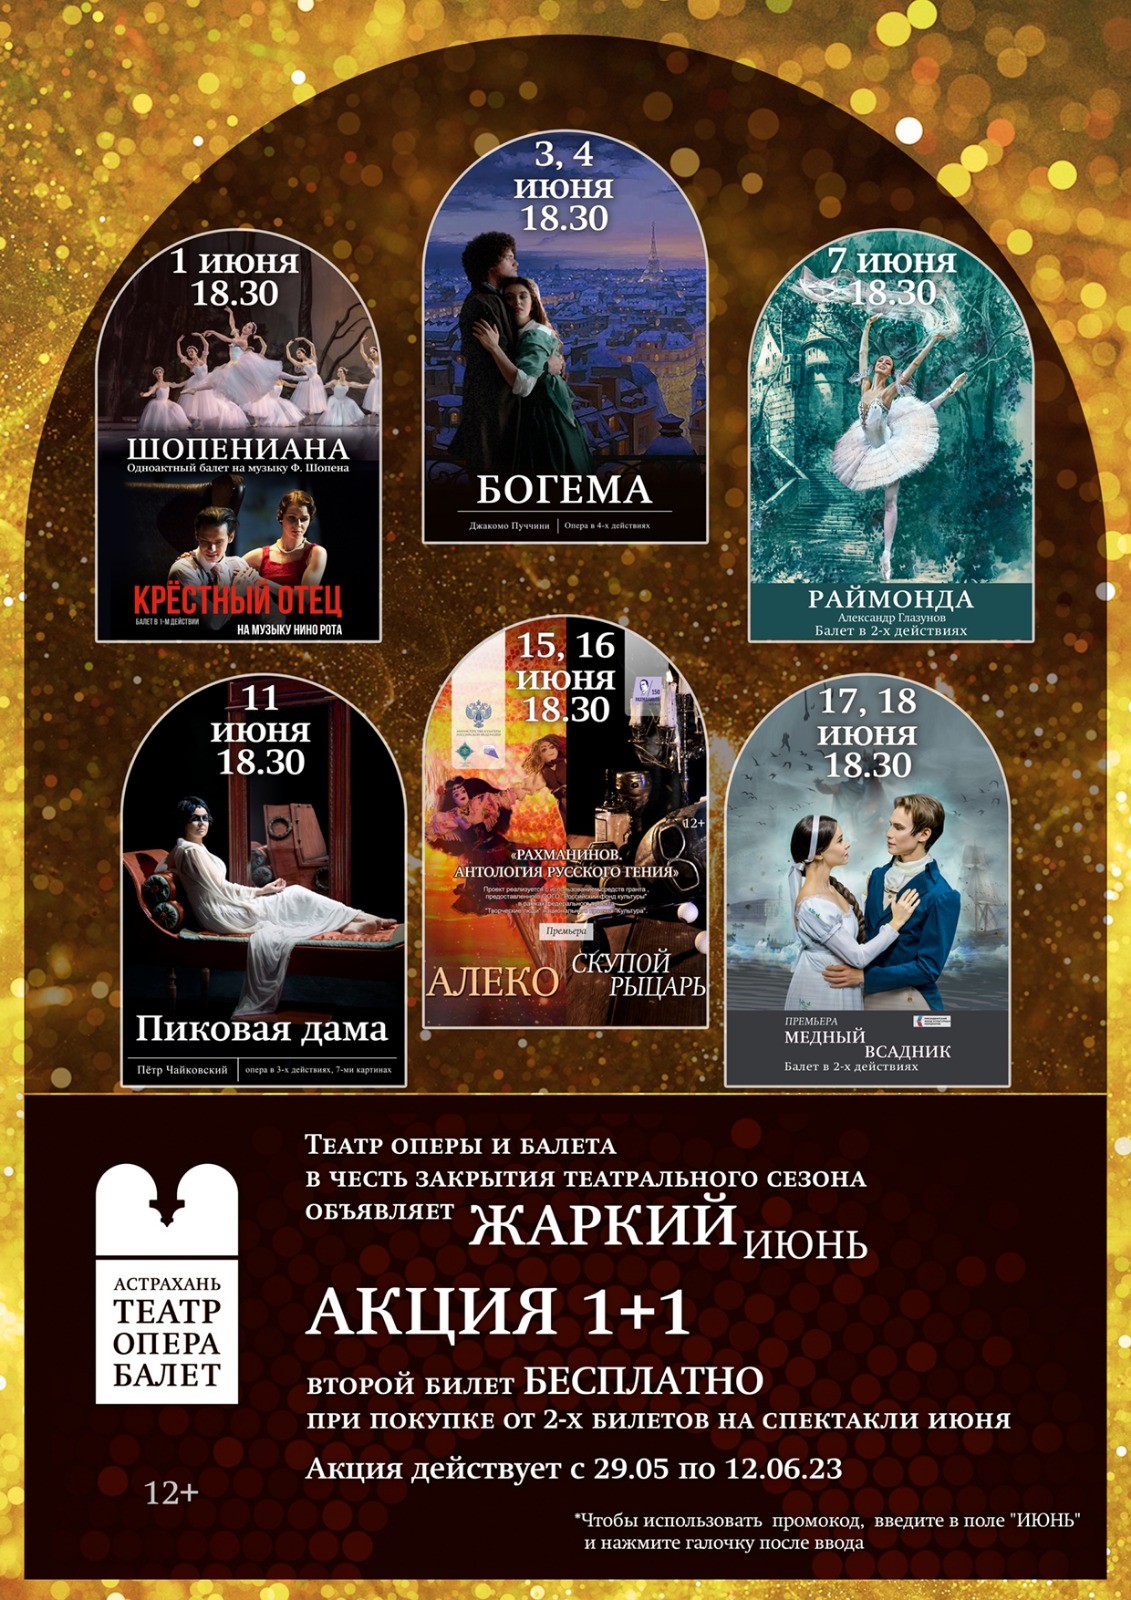 Встречай лето в Астраханском театре оперы и балета с акцией 1+1